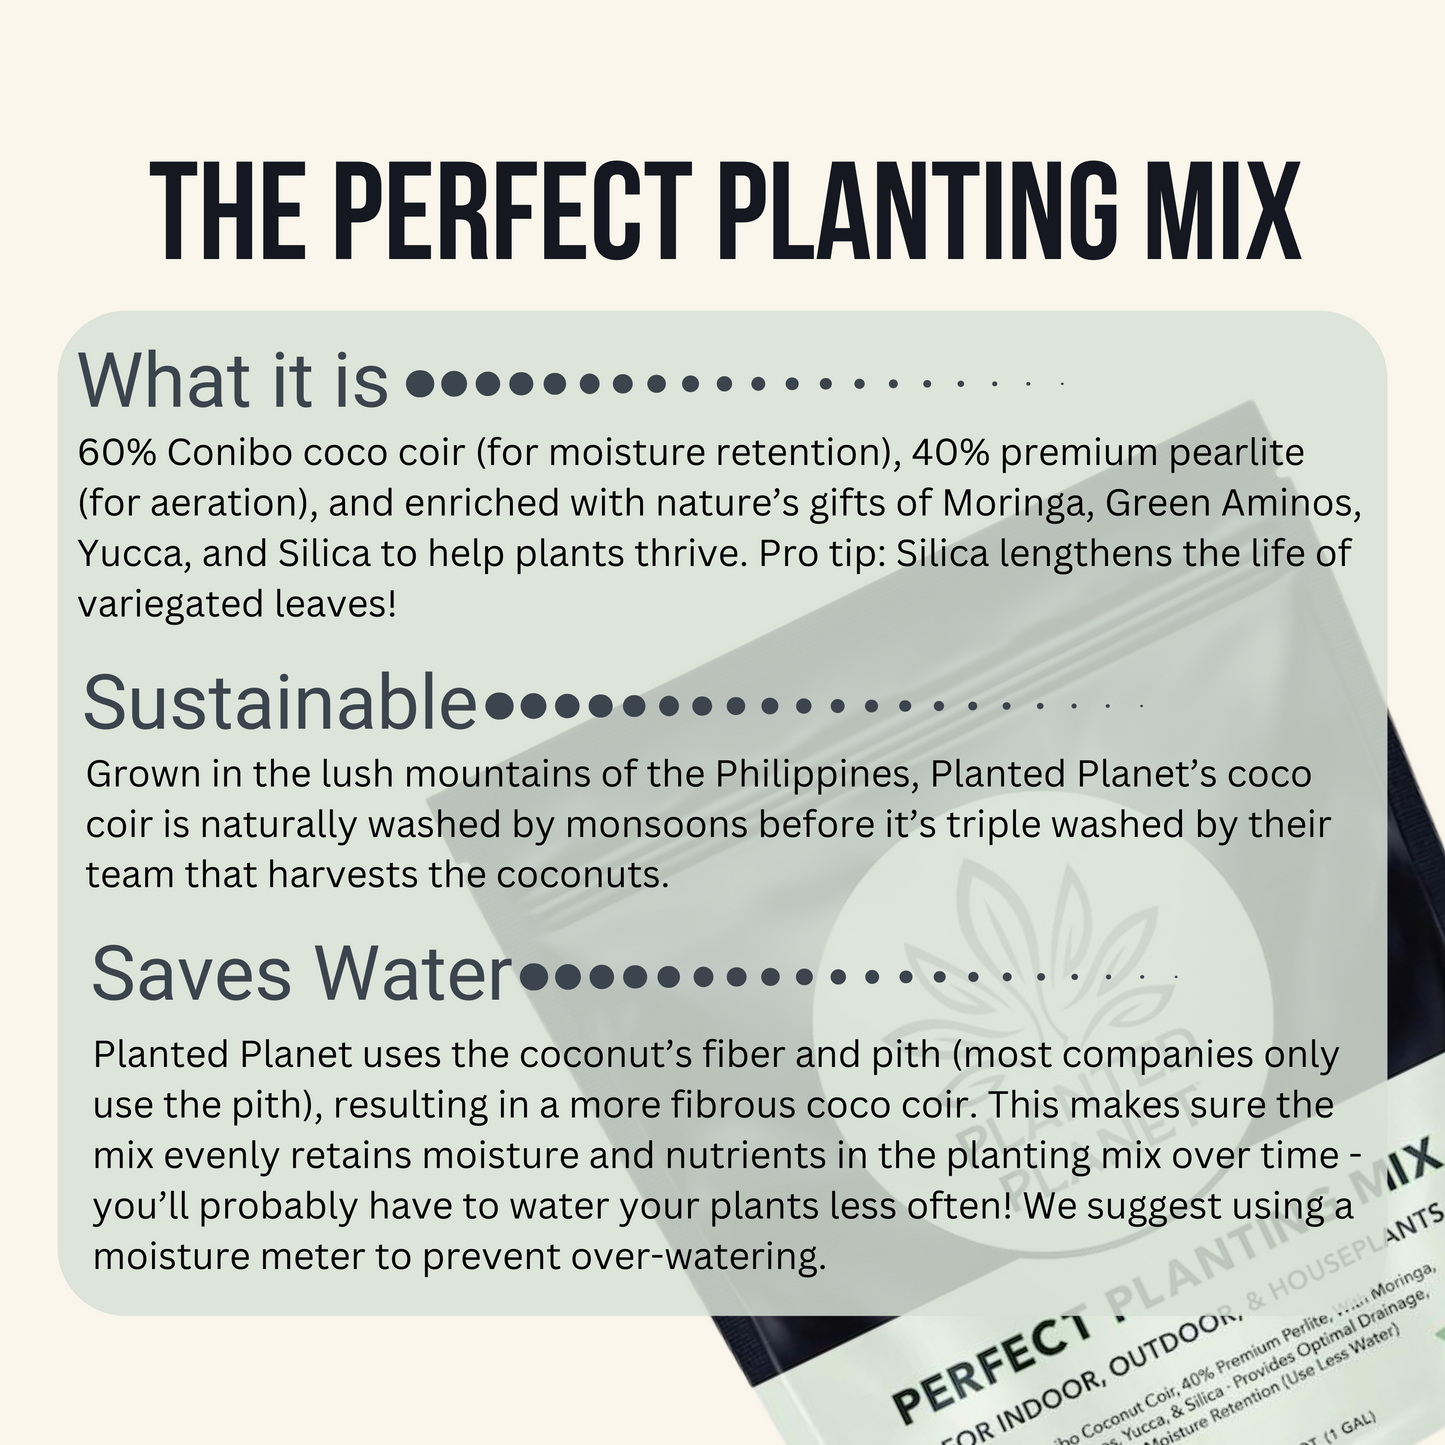 Planted Planet 'The Dream Team' (2 mezclas perfectas para plantar, 1 mezcla para suculentas y 1 biocarbón de coco)